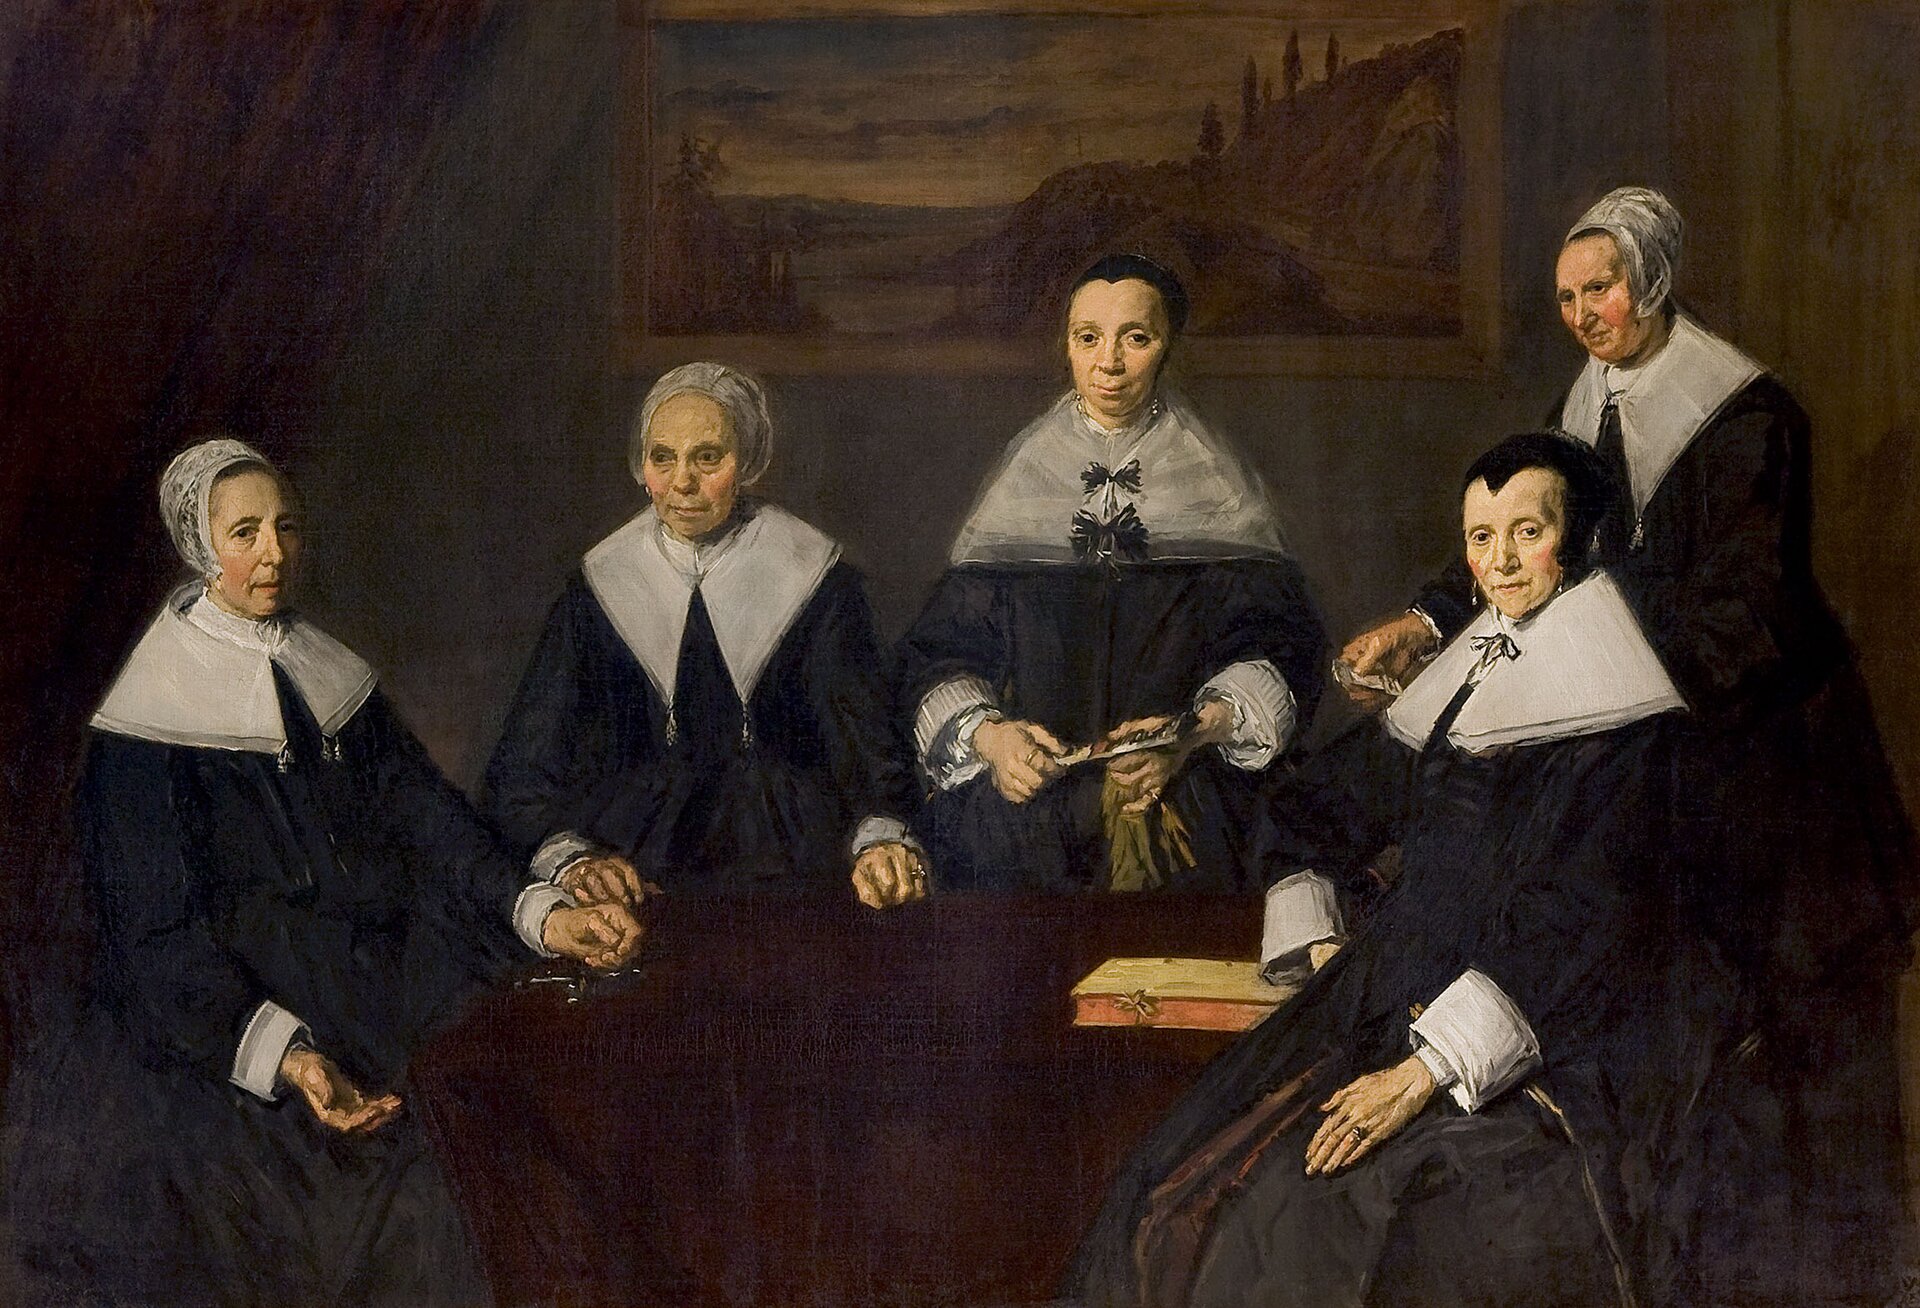 Ilustracja przedstawia obraz Fransa Halsa „Regentki domu staruszek w Haarlemie”. Na obrazie widzimy kilka starszych kobiet. Ubrane są w długie, czarne suknie, z białymi kołnierzami. Na włosach mają czepki. Kobiety siedzą przy stole, na którym leży książka. W tle na ścianie widoczny jest wiszący obraz pejzażowy o melancholijnym nastroju.